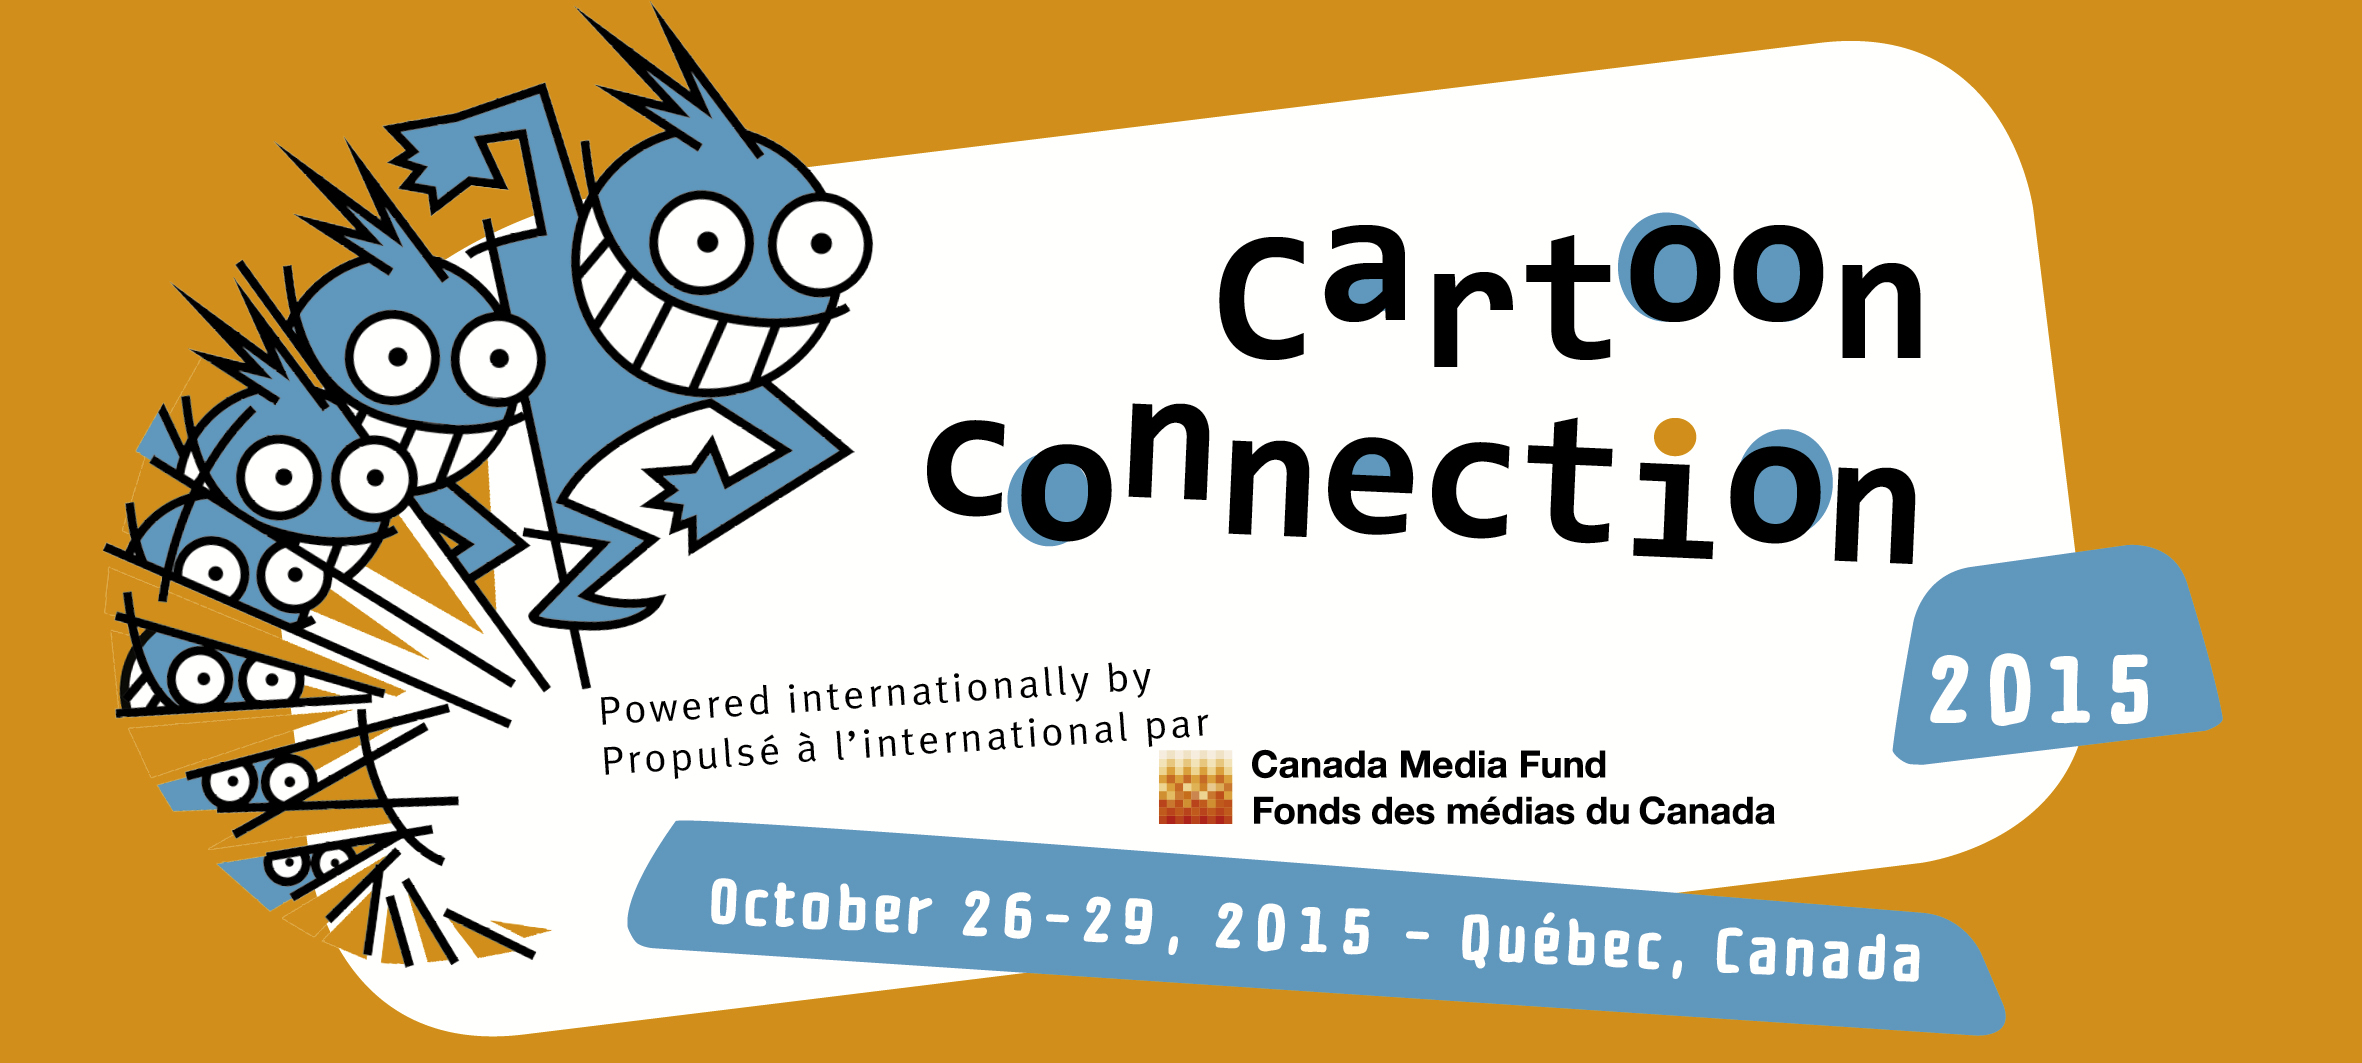 Le BCTQ et la SODEC, fiers partenaires du Cartoon Connection Canada